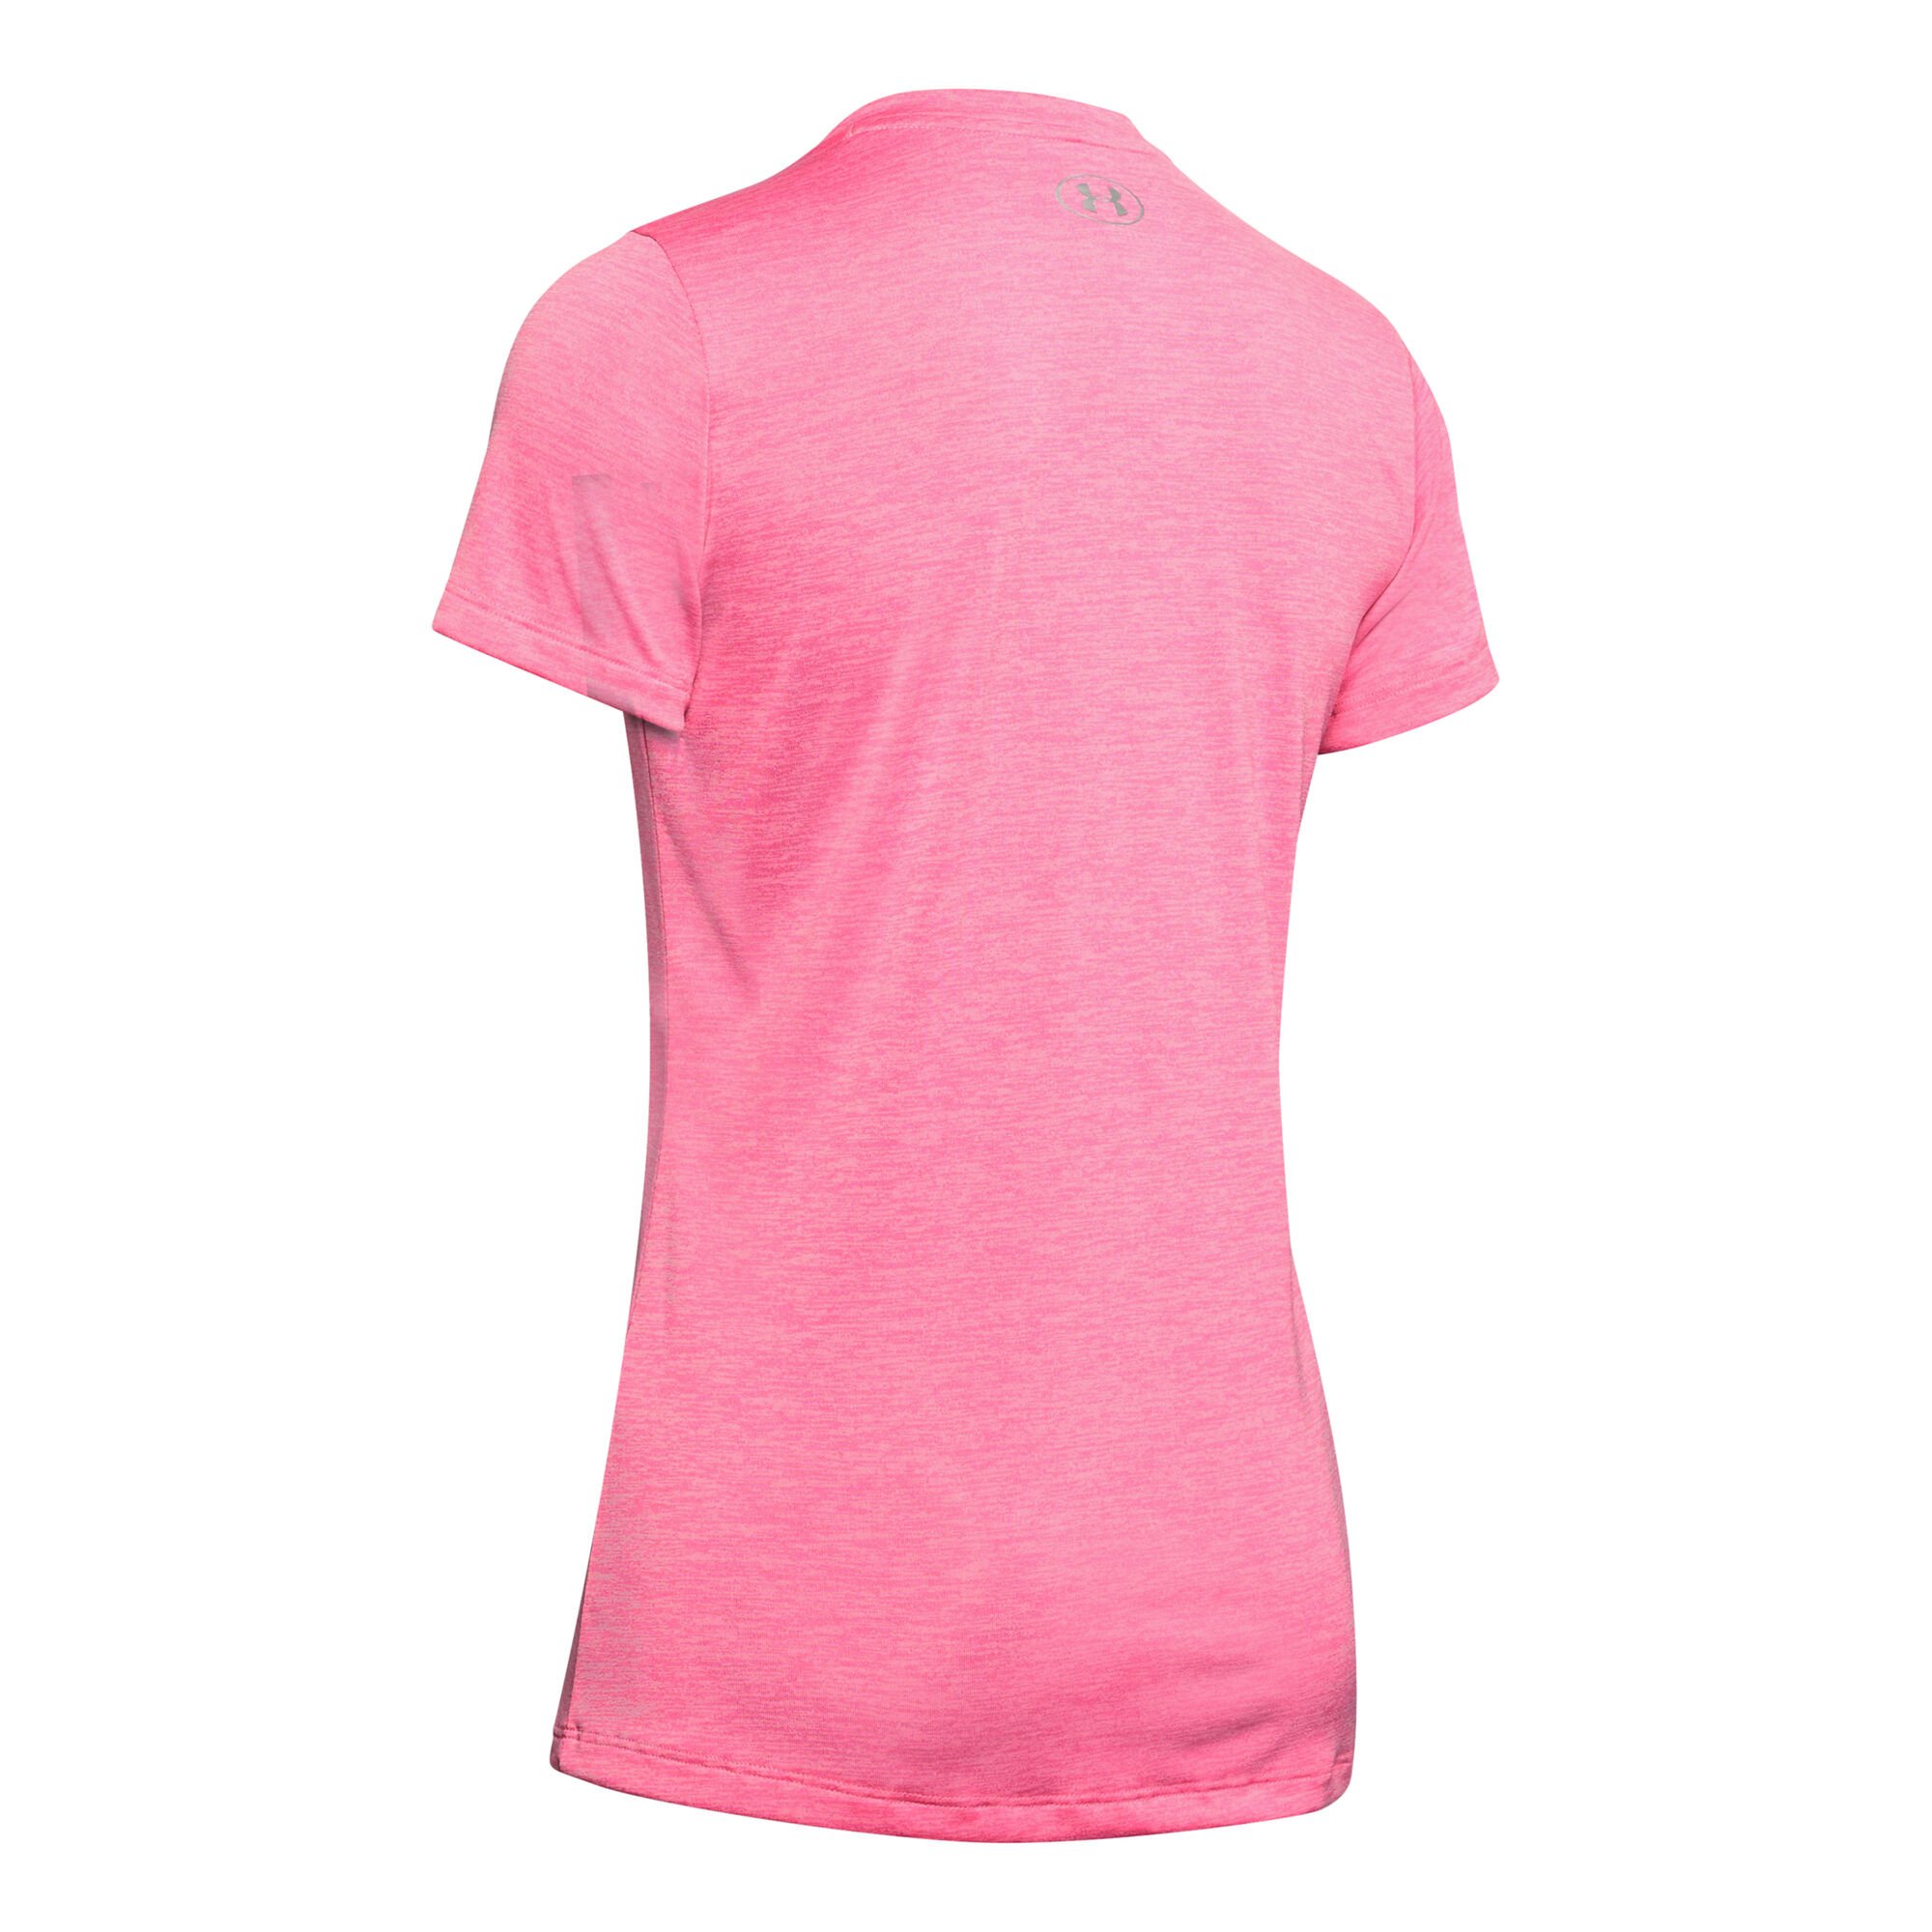 buy Under Armour Tech Twist T-Shirt Women - Pink, Pink online | Tennis ...